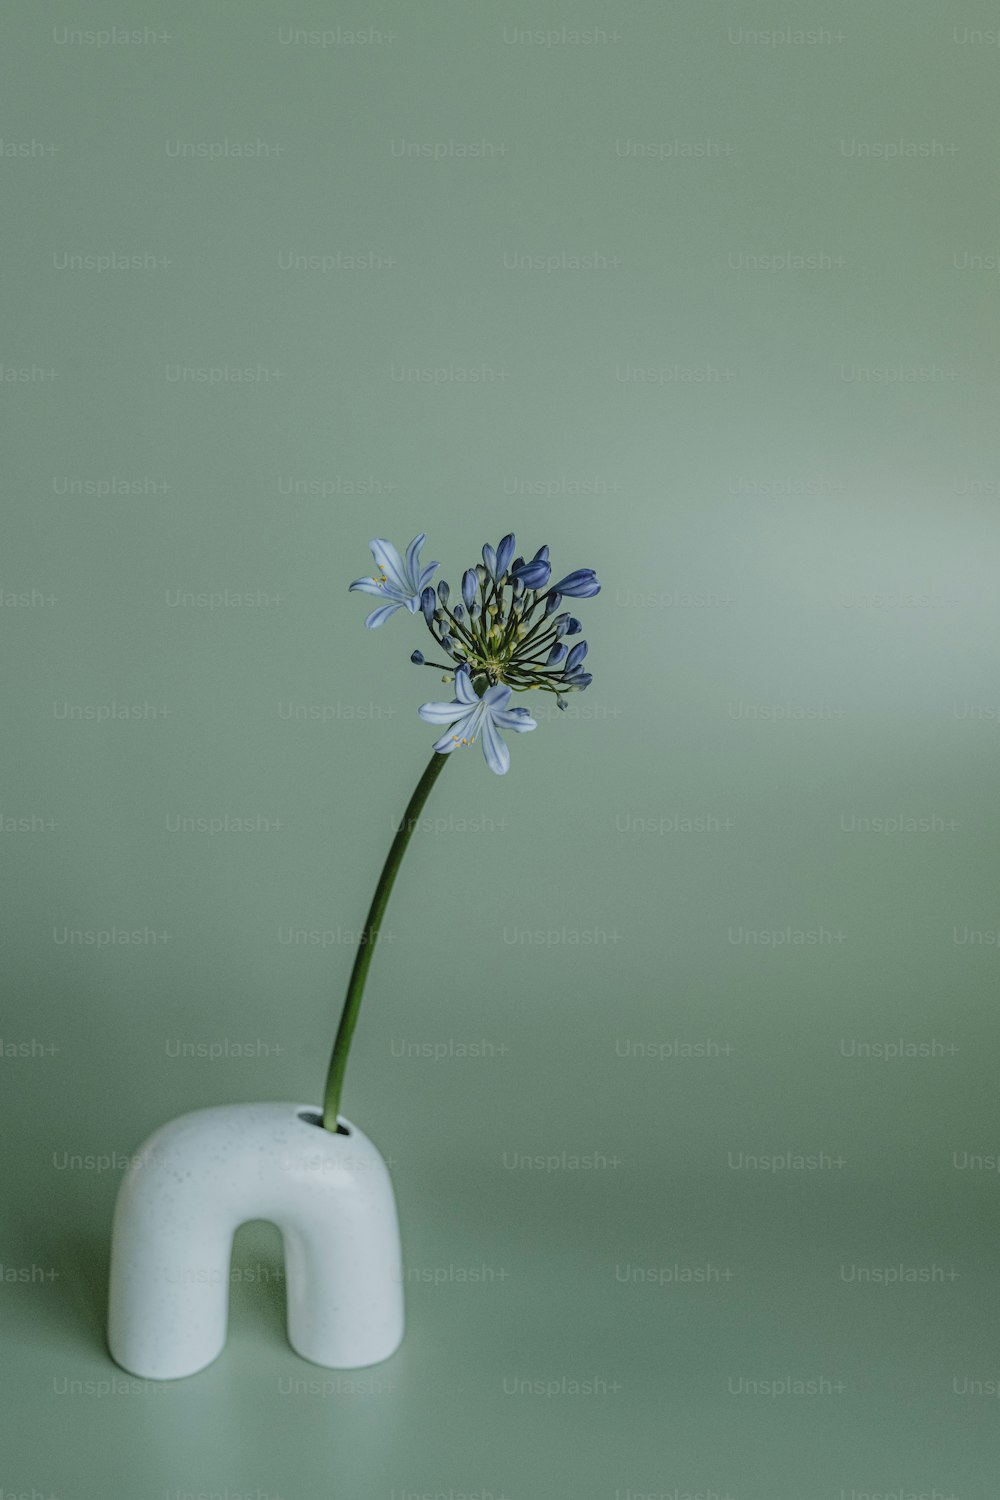 um vaso branco com uma flor azul nele